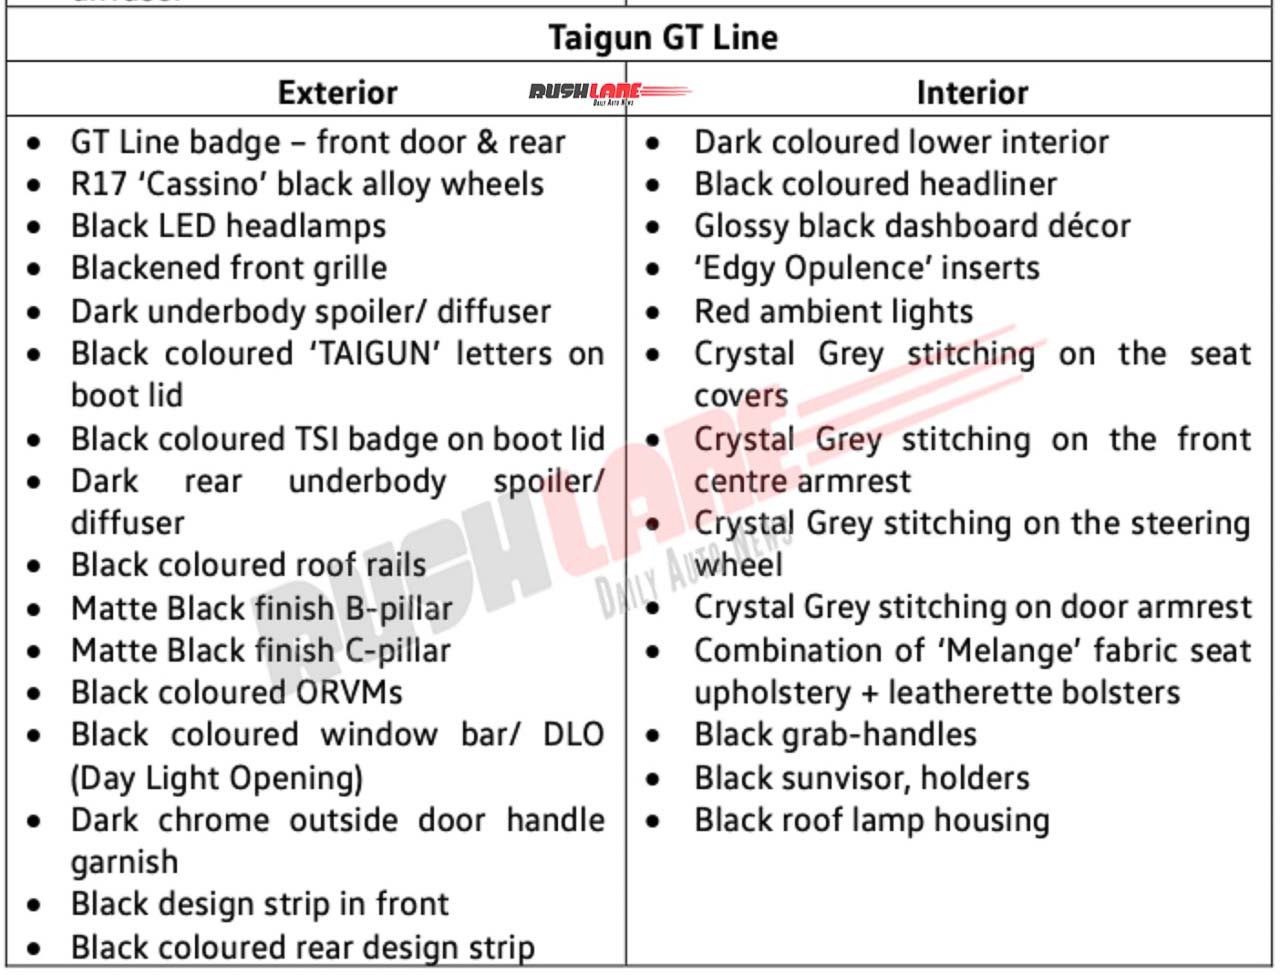 VW Taigun GT Line Features List